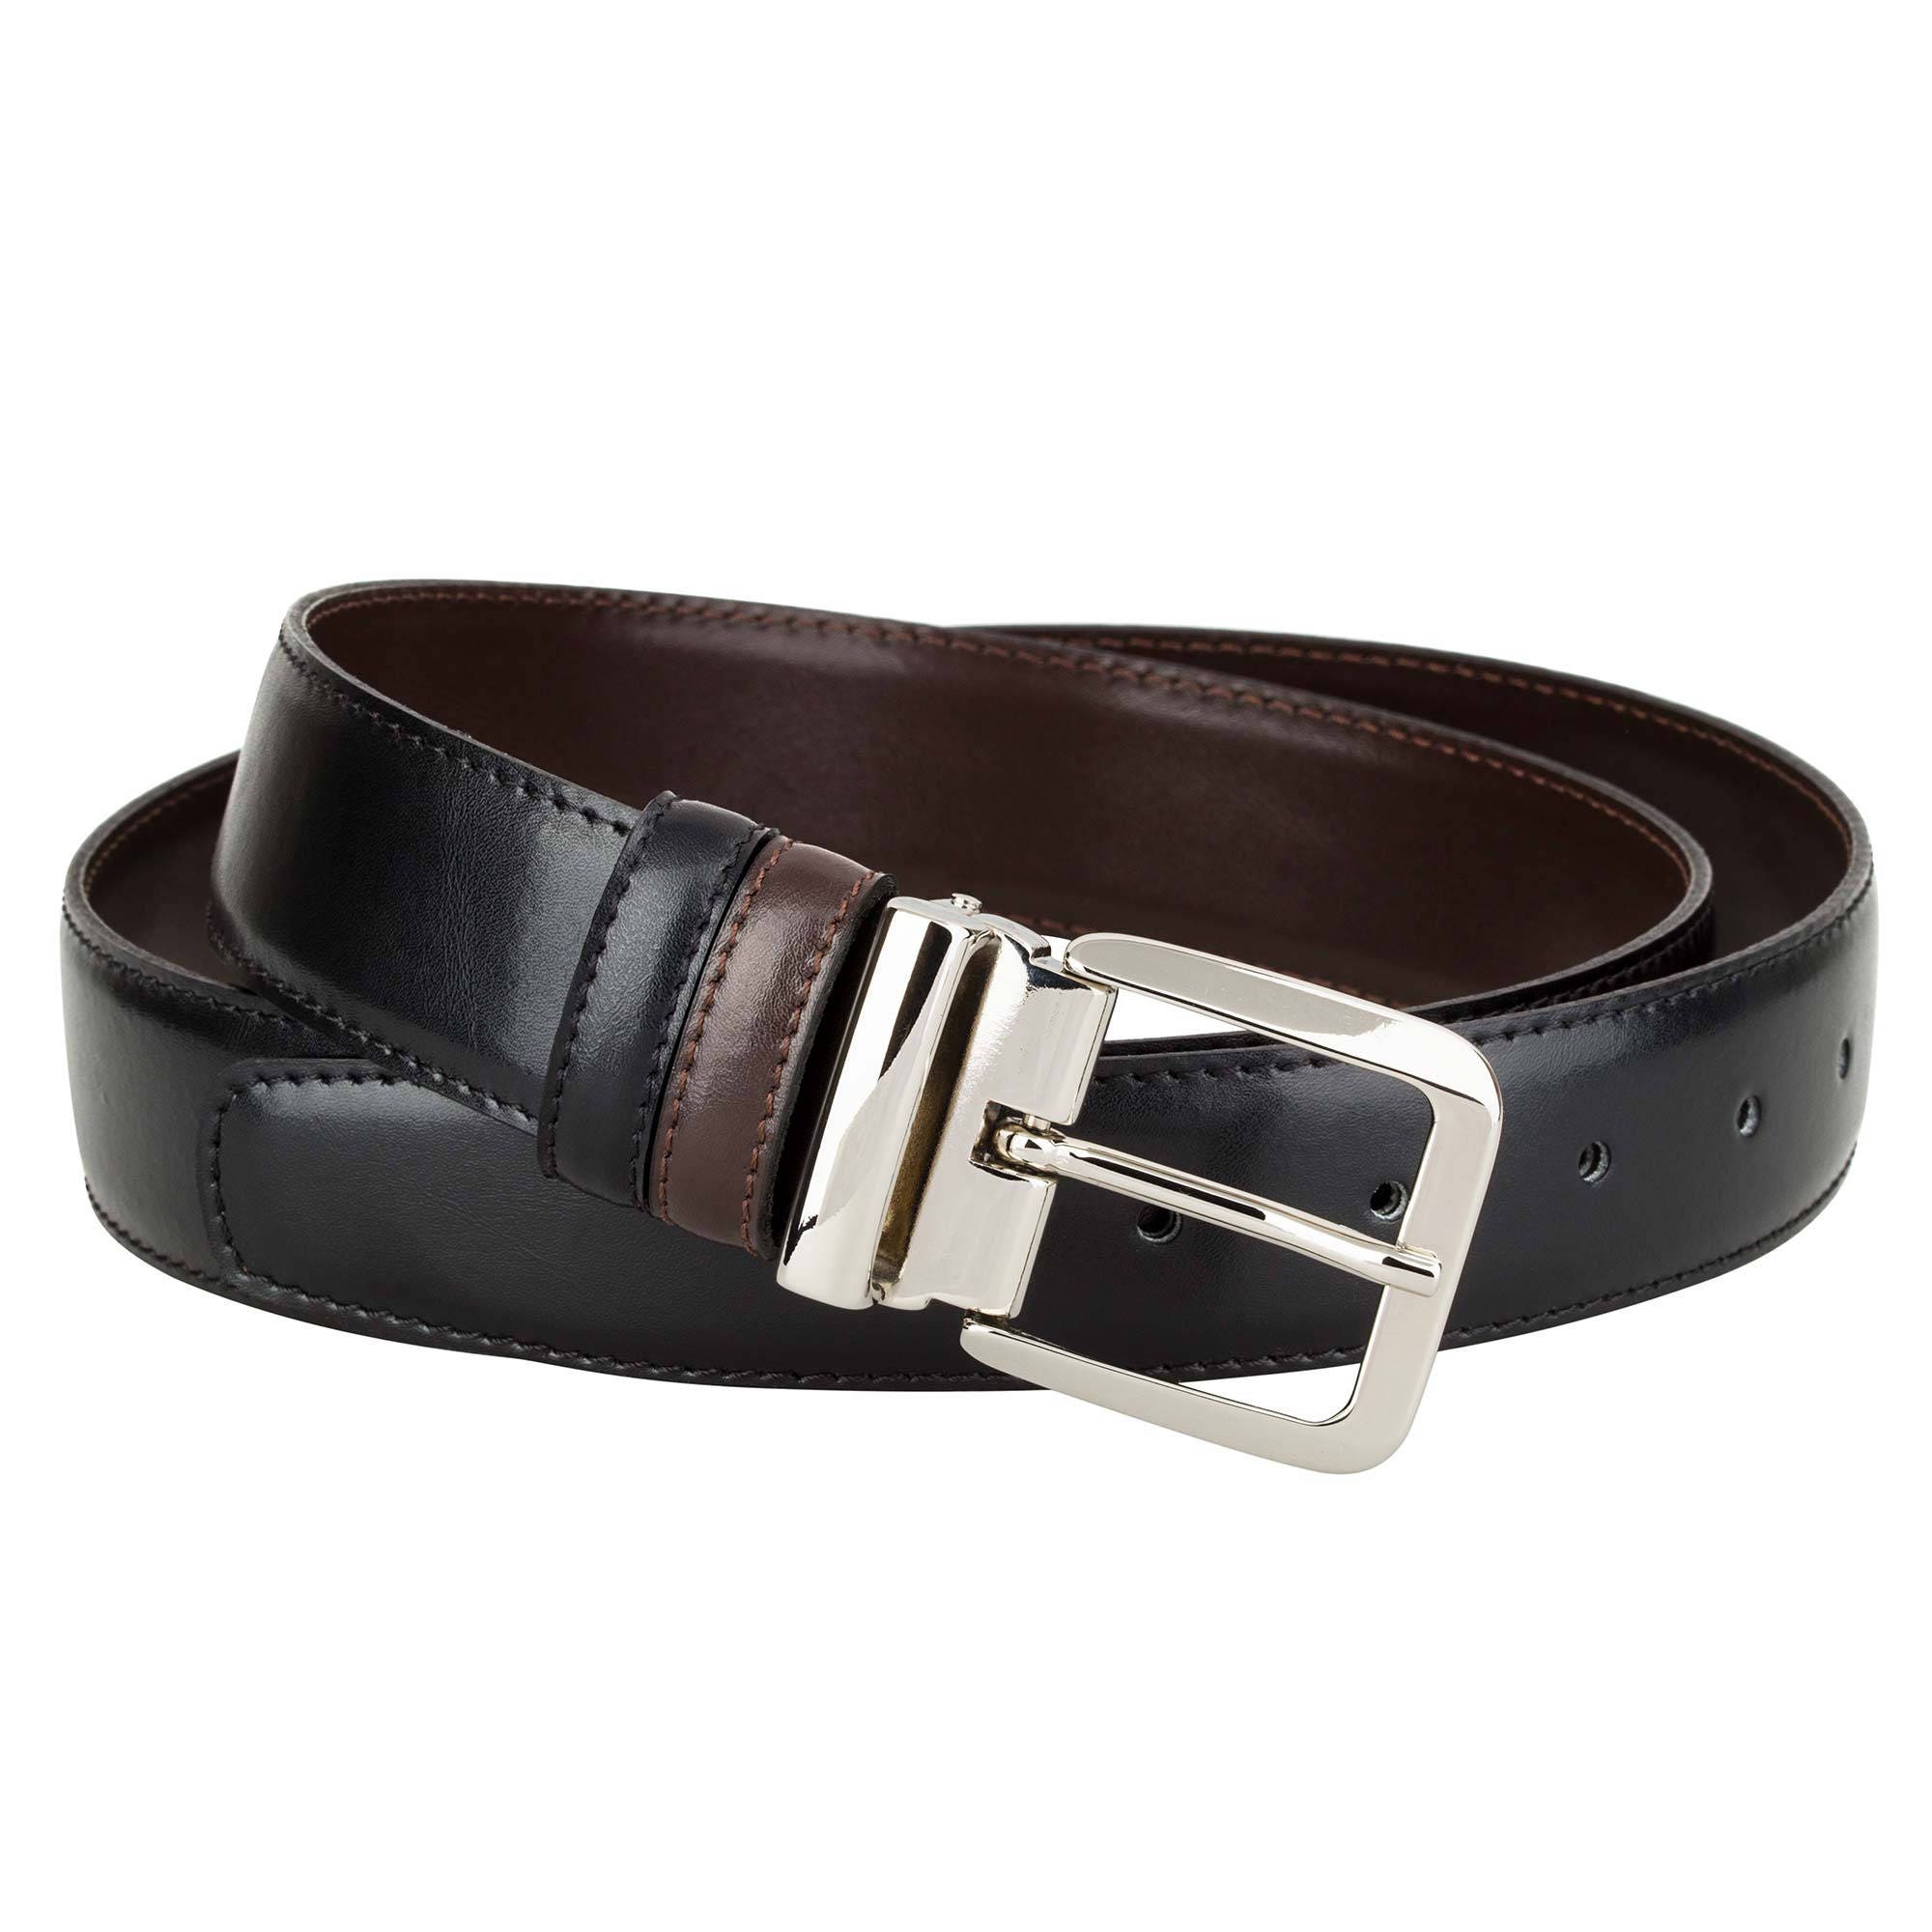 Kluisje rem Pech Reversible Belt Men Leather Belt Two Colored Black Brown Belts - Etsy